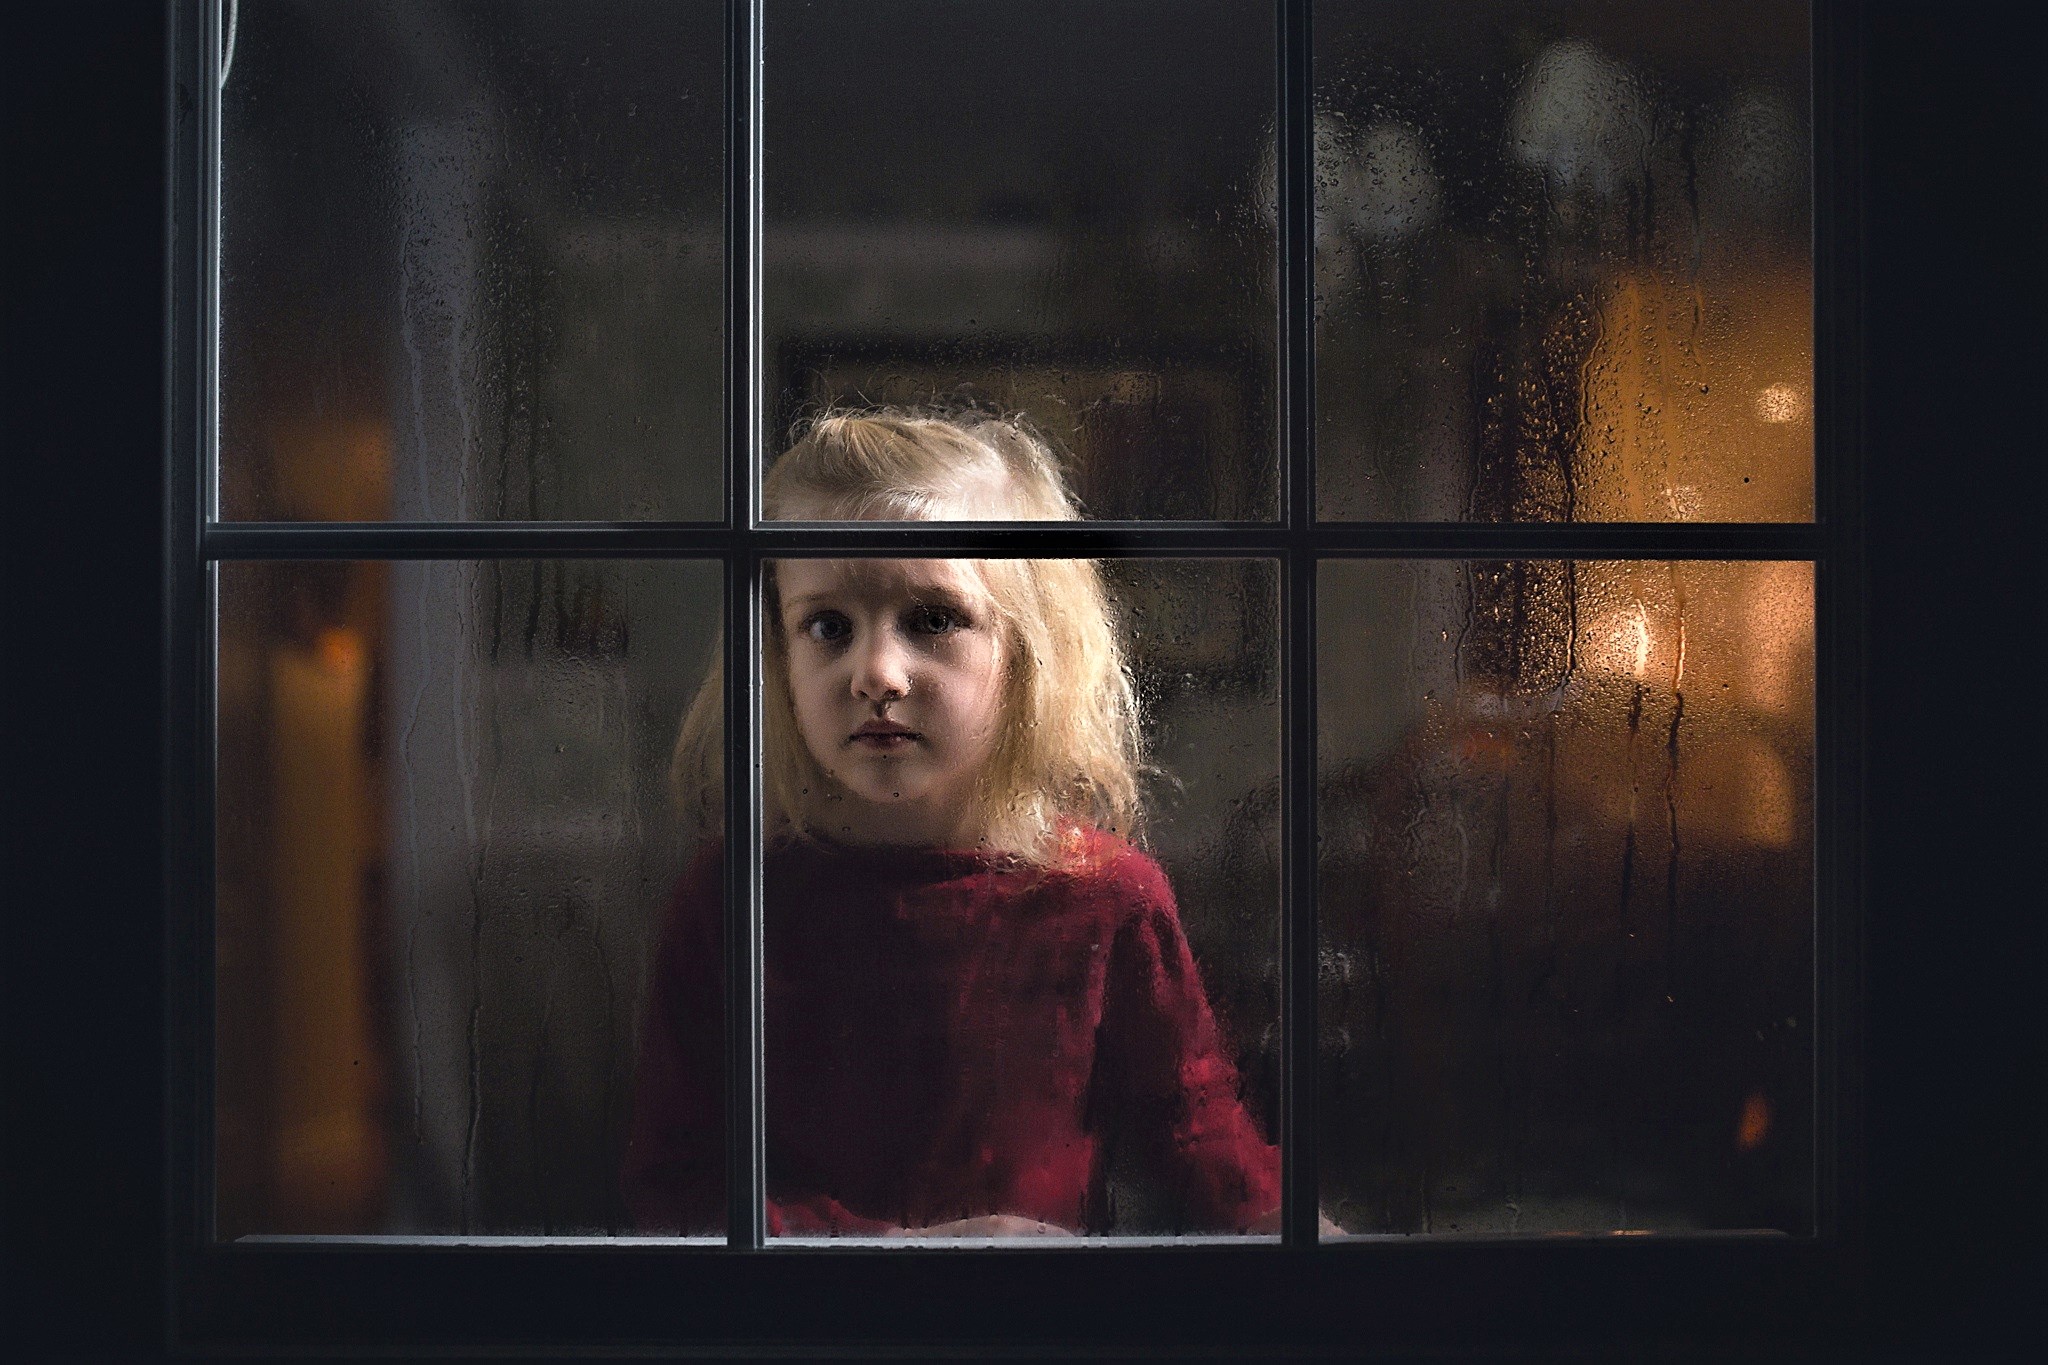 Девочка смотрит в окно